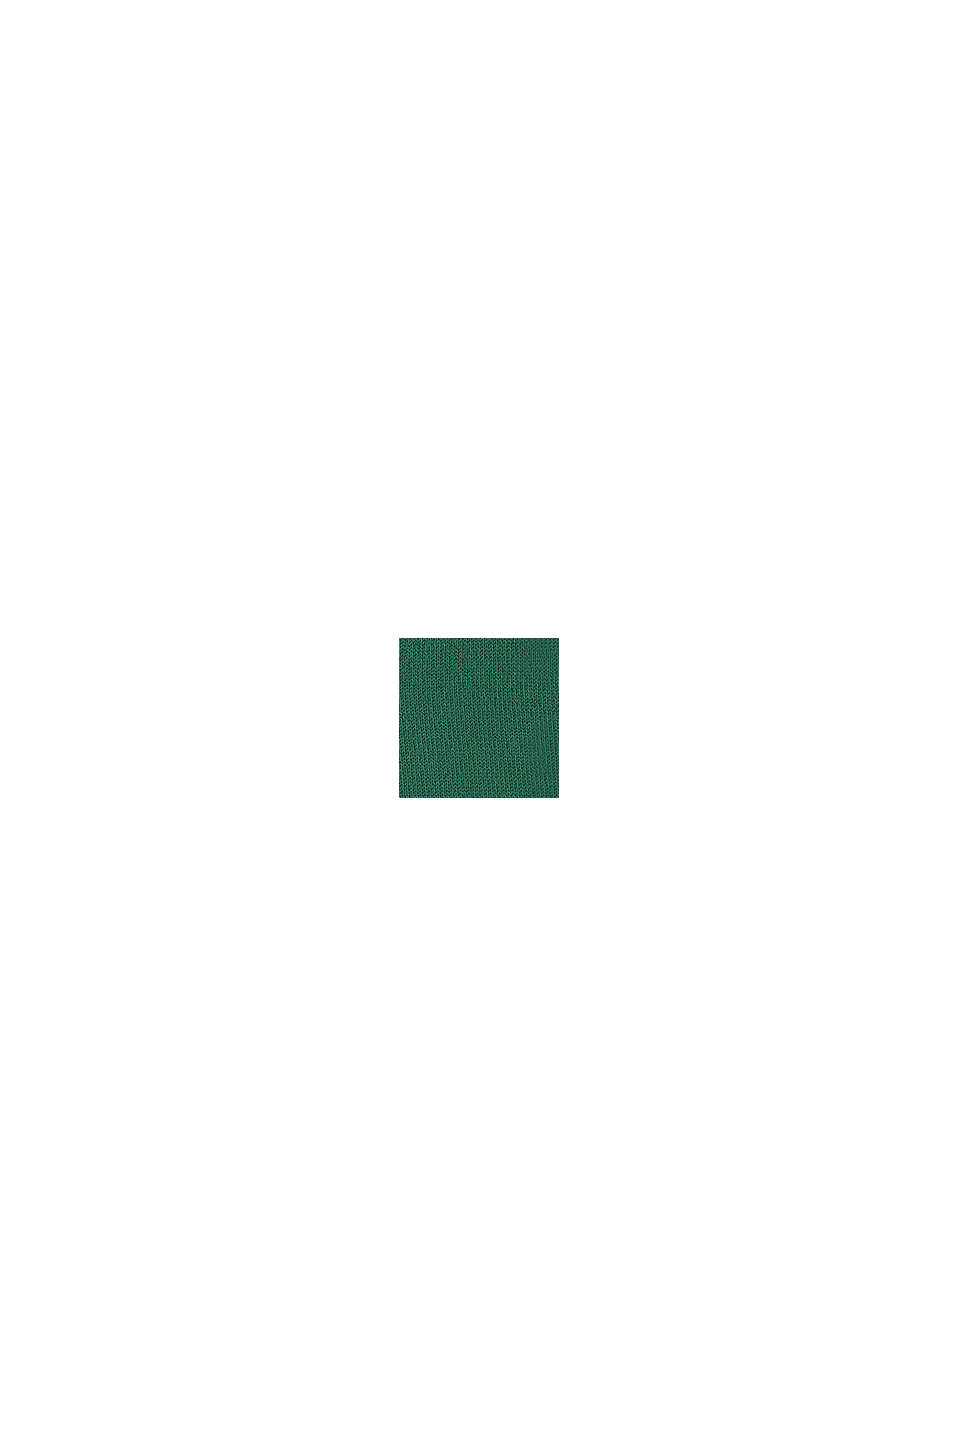 Katoenen trui met colour block, BOTTLE GREEN, swatch